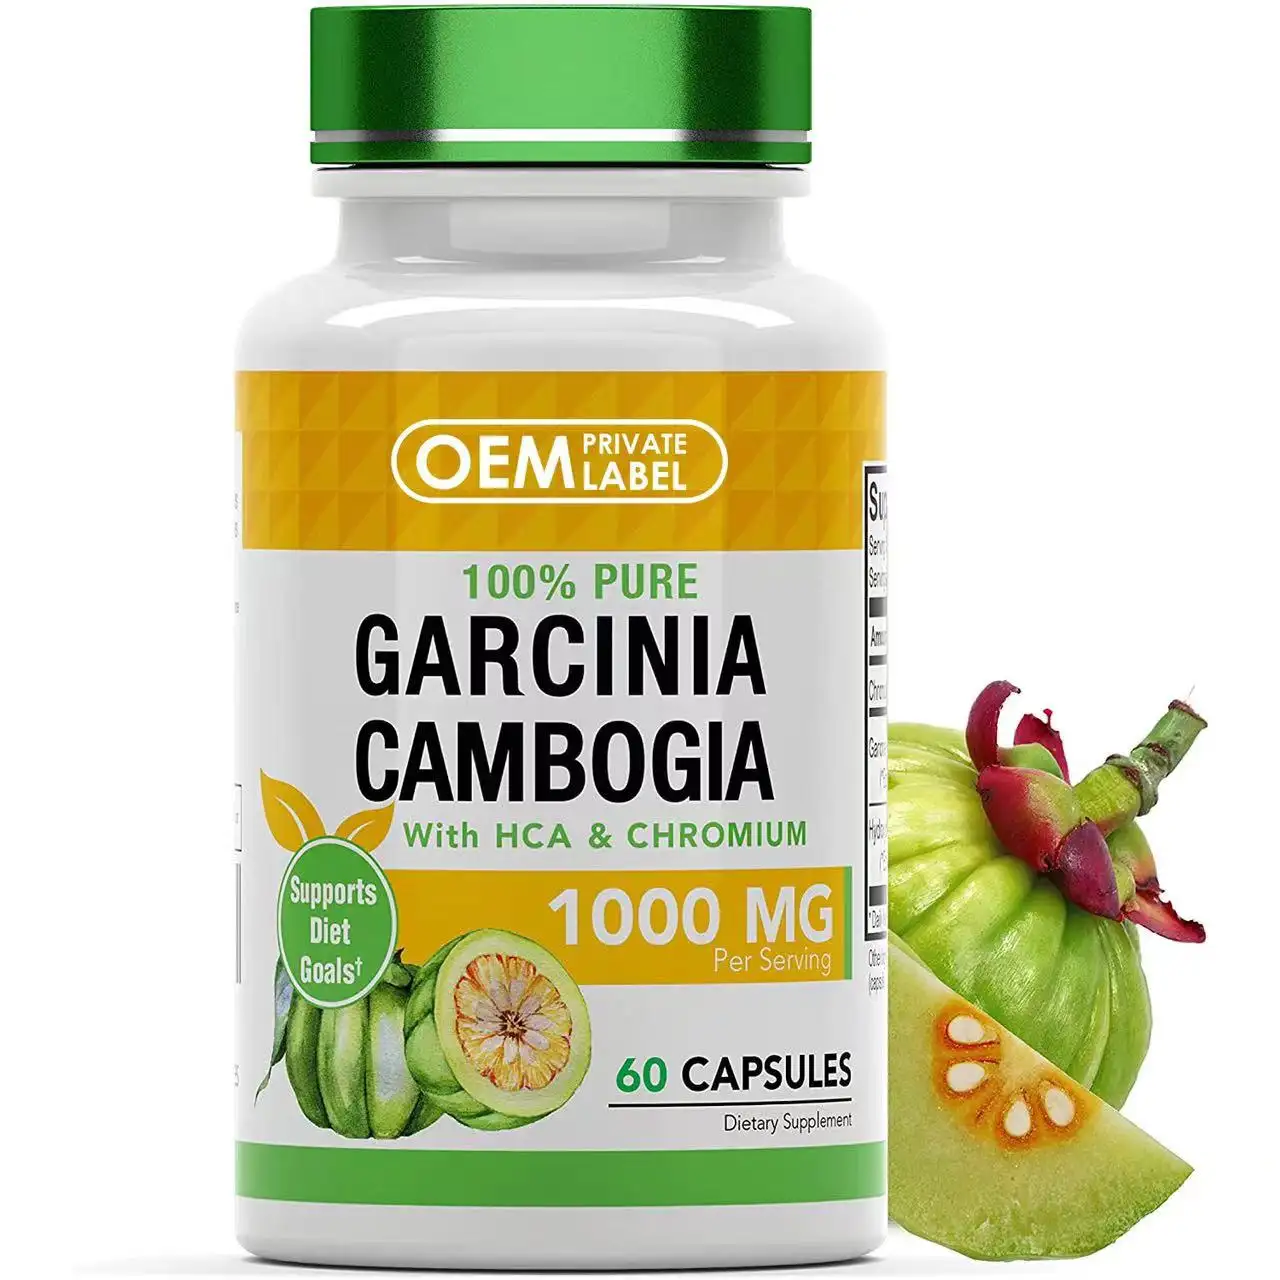 Garcinia Kamboja kapsul GMP HCA efektif pelangsing penurunan berat badan cepat pil pembakar lemak